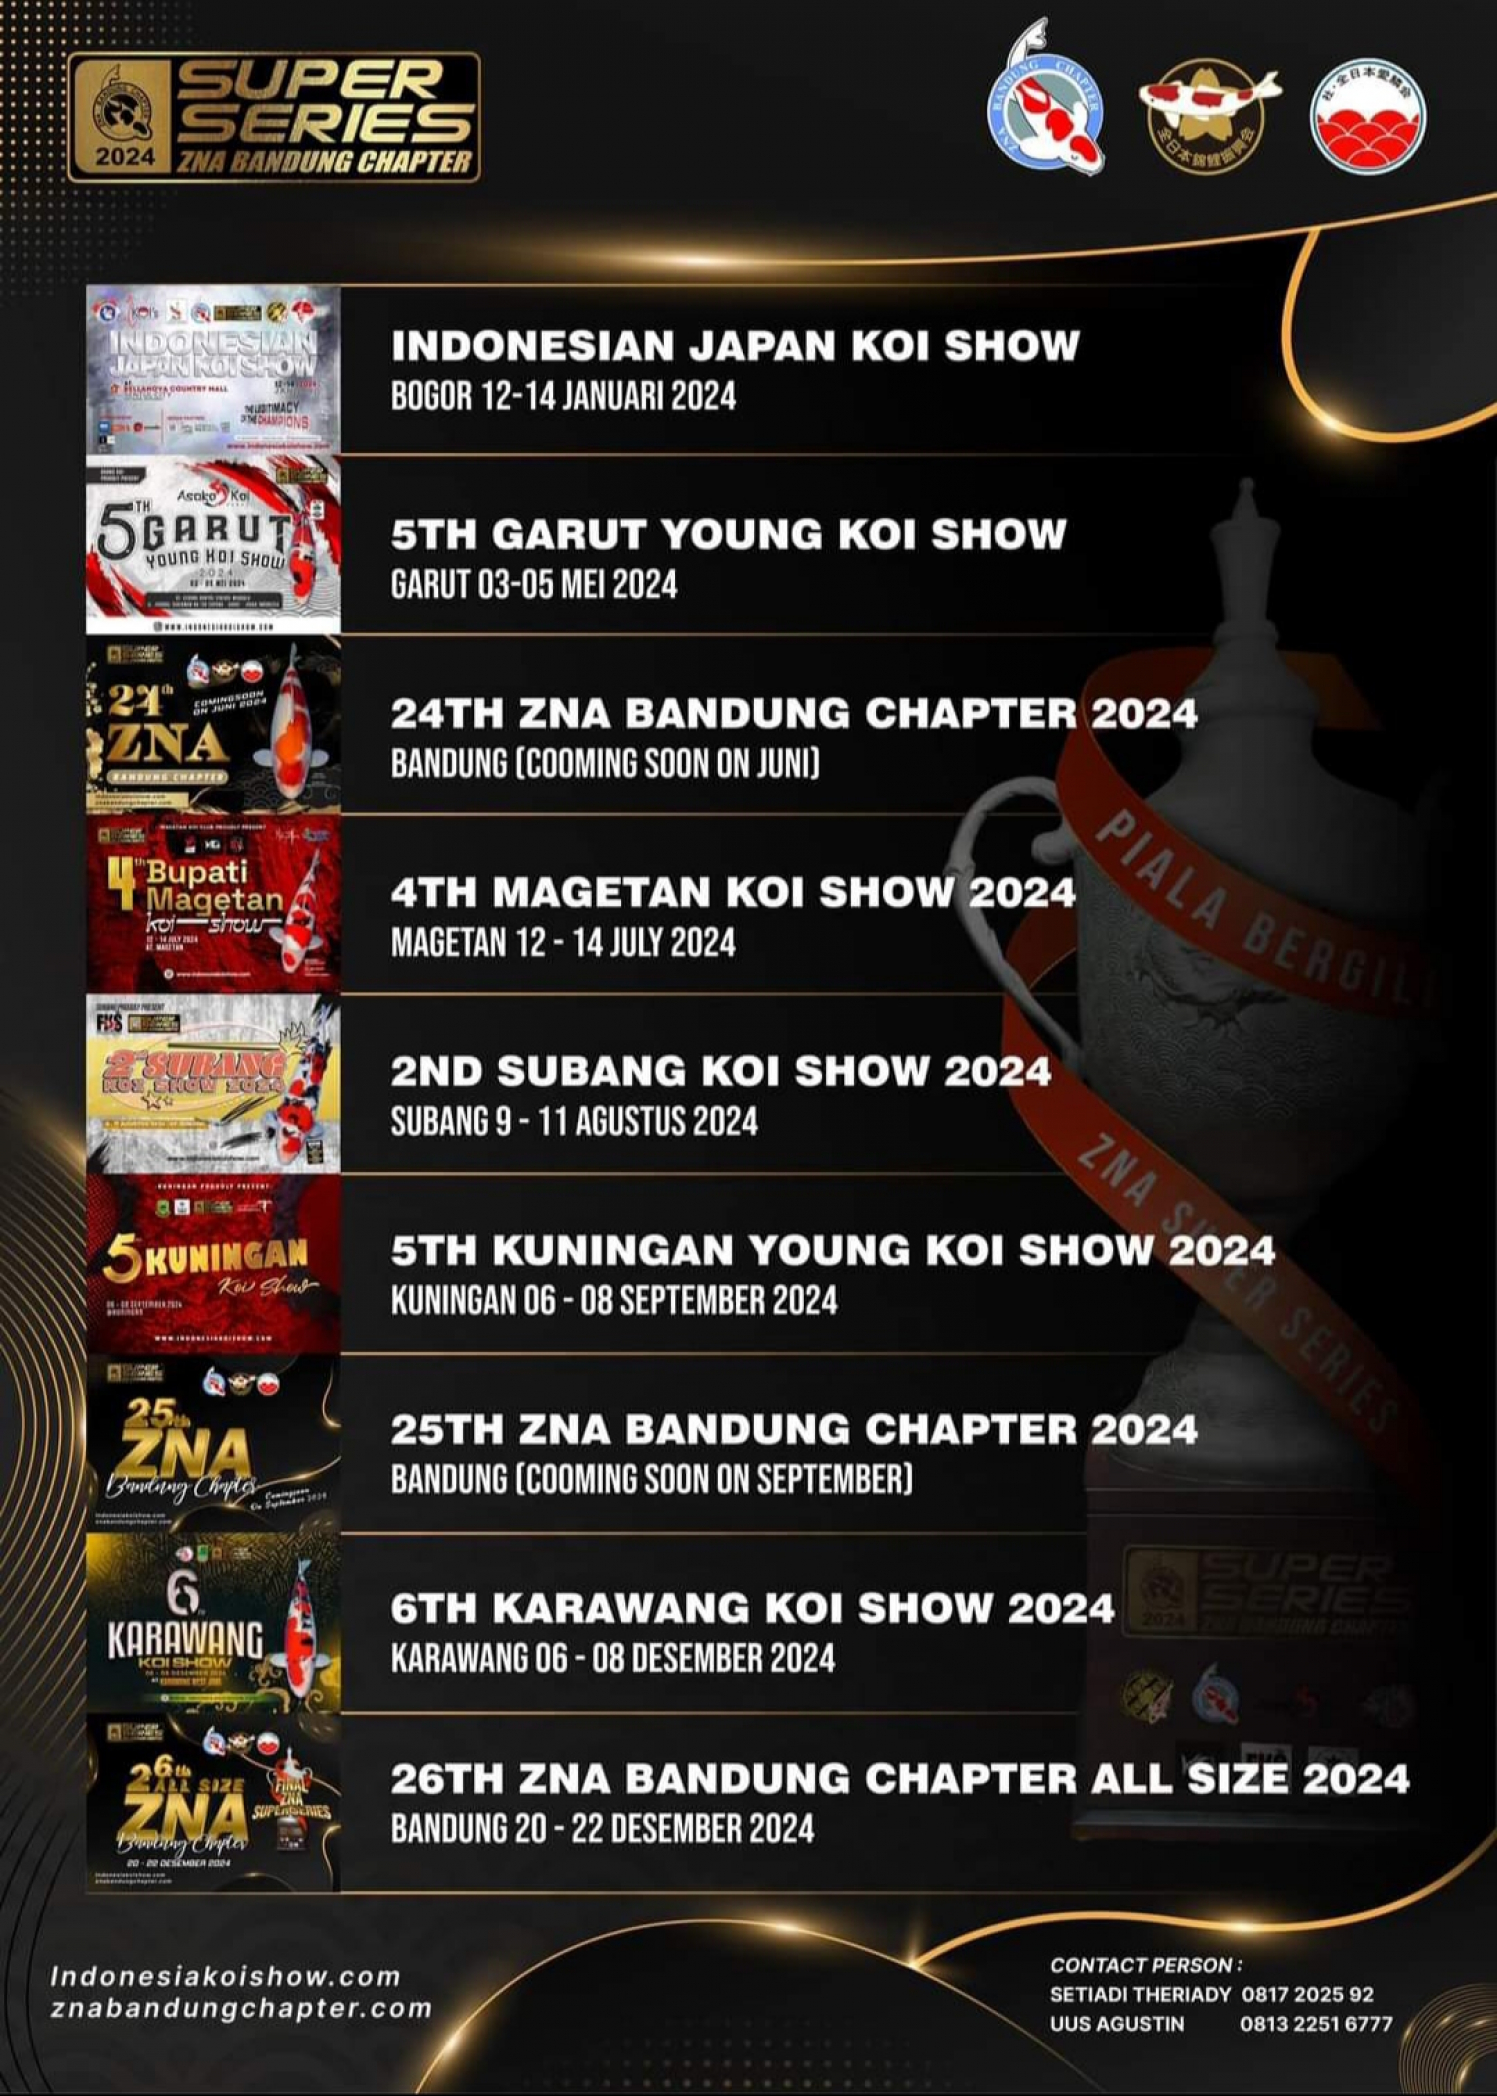 5th Garut Koi Show